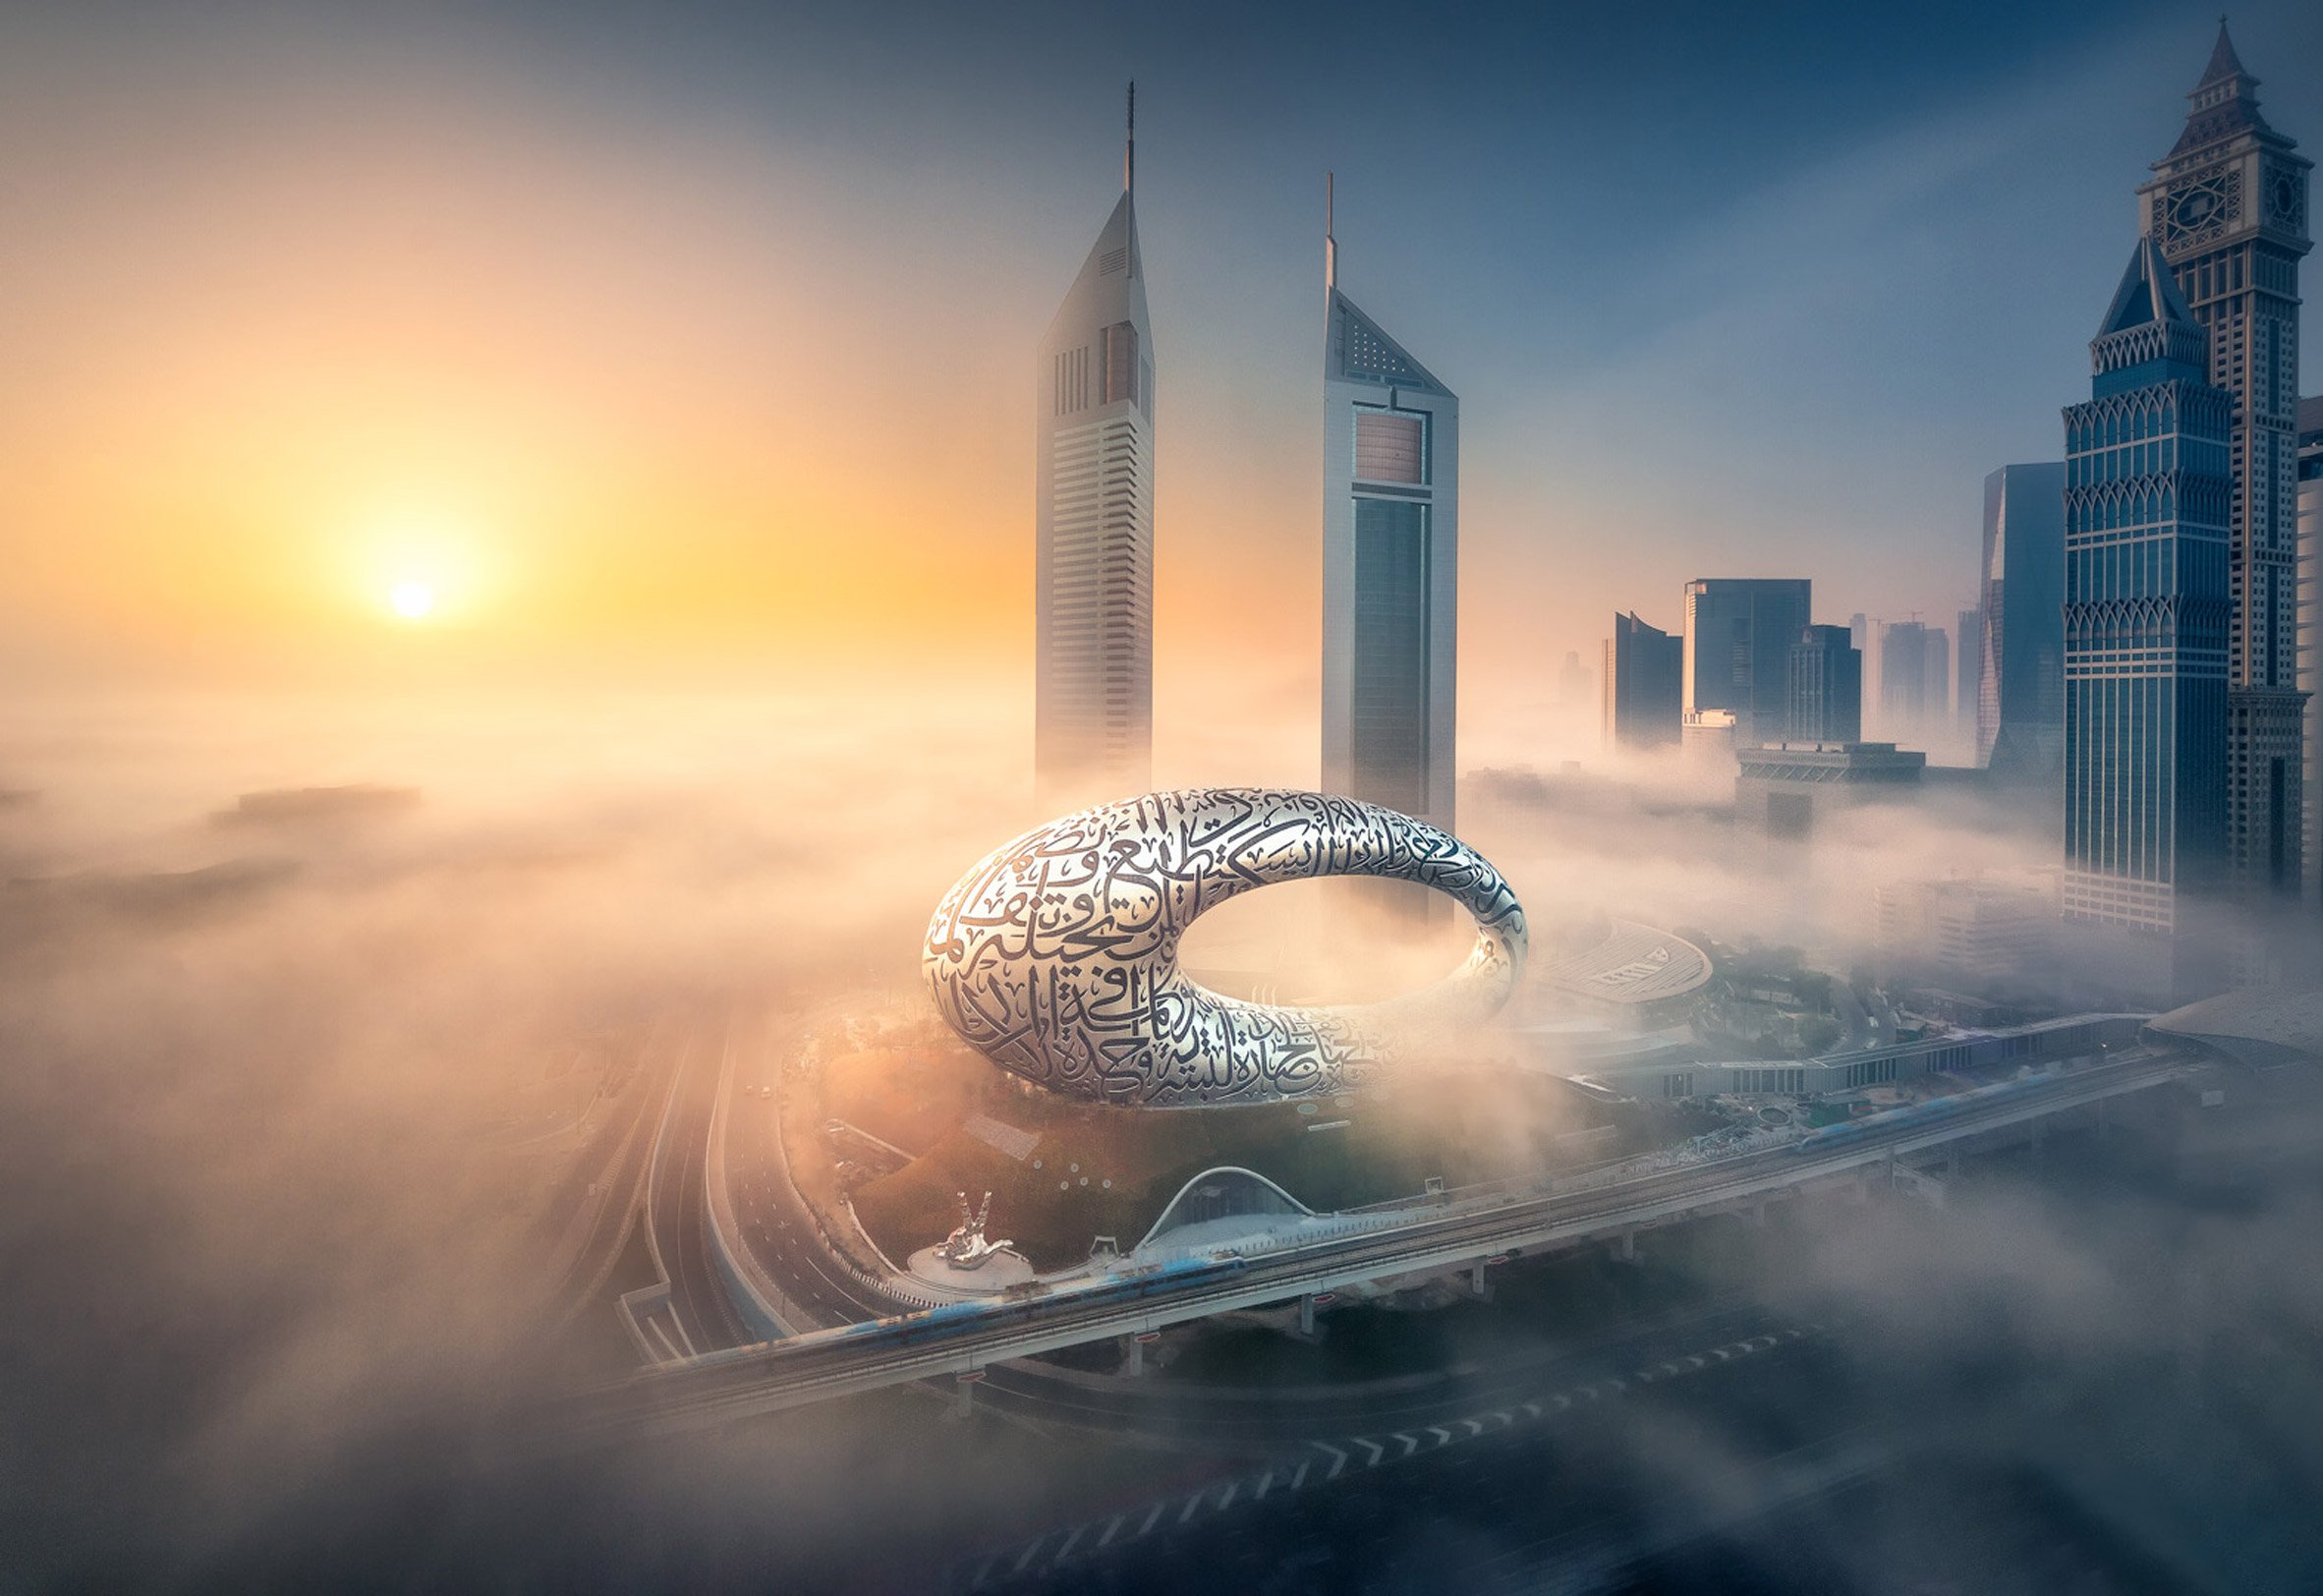 Killa Design's Museum of the Future opens in Dubai